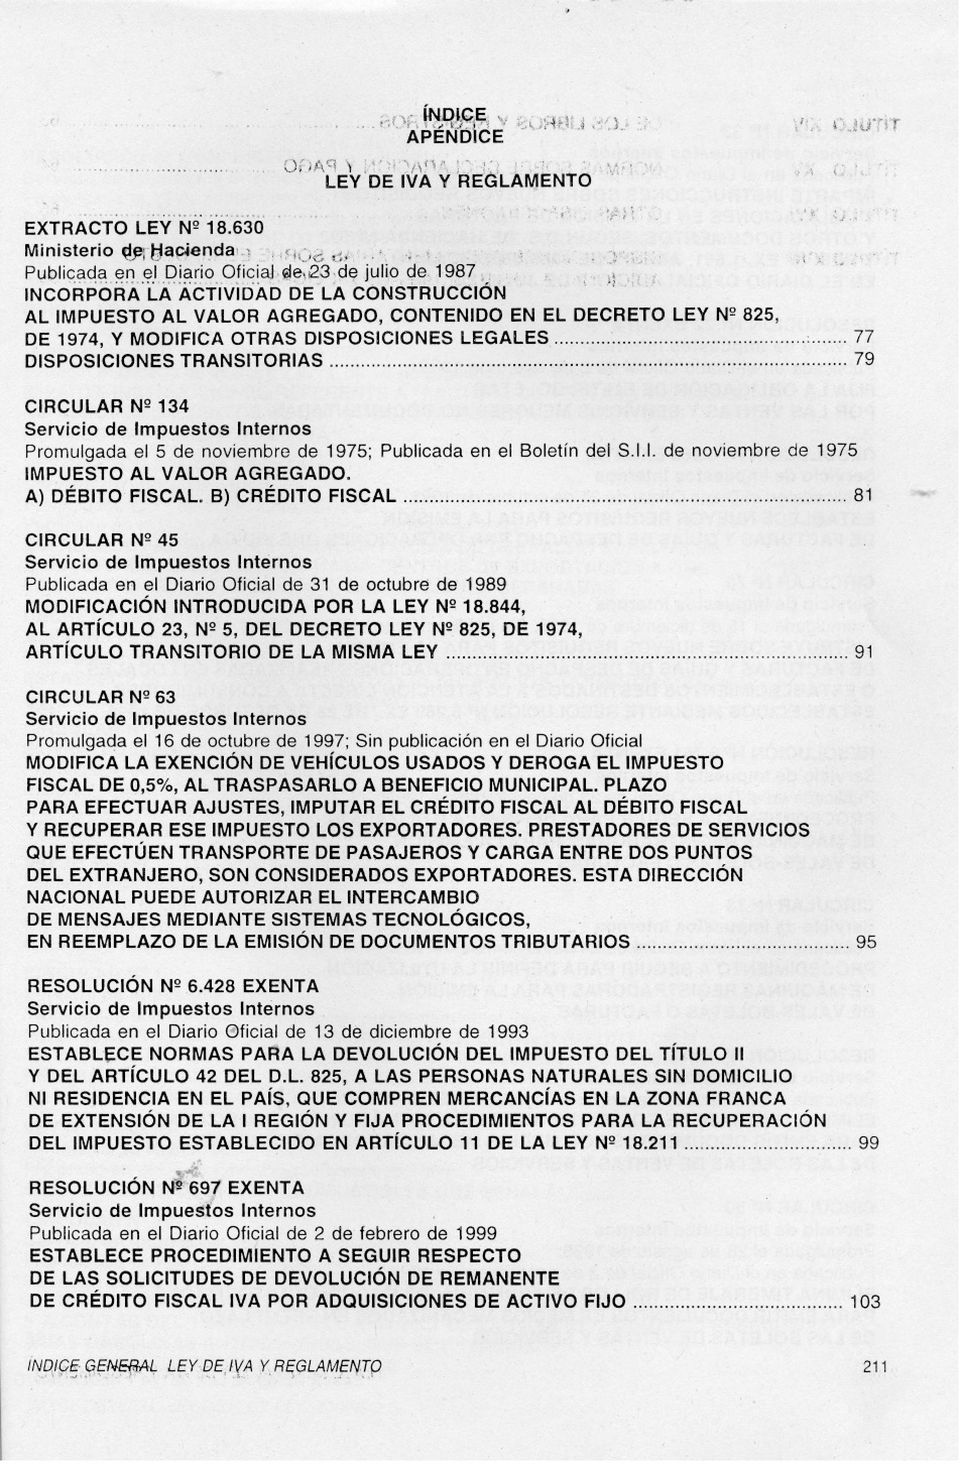 A-ÁCTíviDADDE'LA CC>NSTRUCCI6N AL IMPUESTO AL VALOR AGREGADO, CONTENIDO EN EL DECRETO LEY NQ825, D,E 1974, Y MODIFICA OTRAS DISPOSICIONES LEGALES,: n DISPOSICIONESTRANSITORIAS,, 79 CIRCULAR NQ134